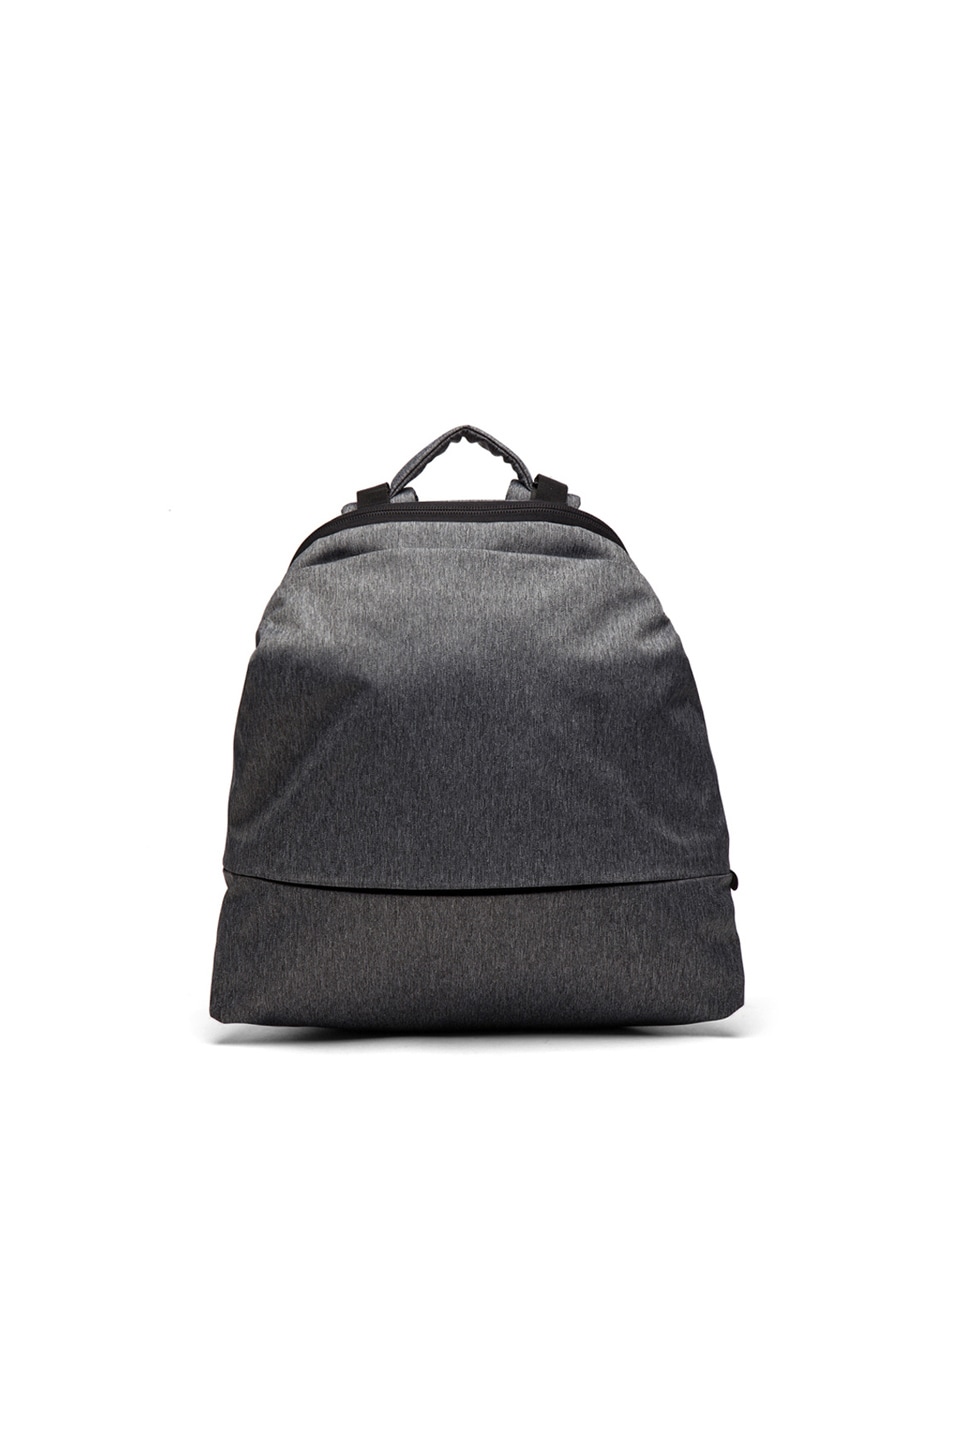 Image 1 of Cote & Ciel Meuse Backpack in Black Melange